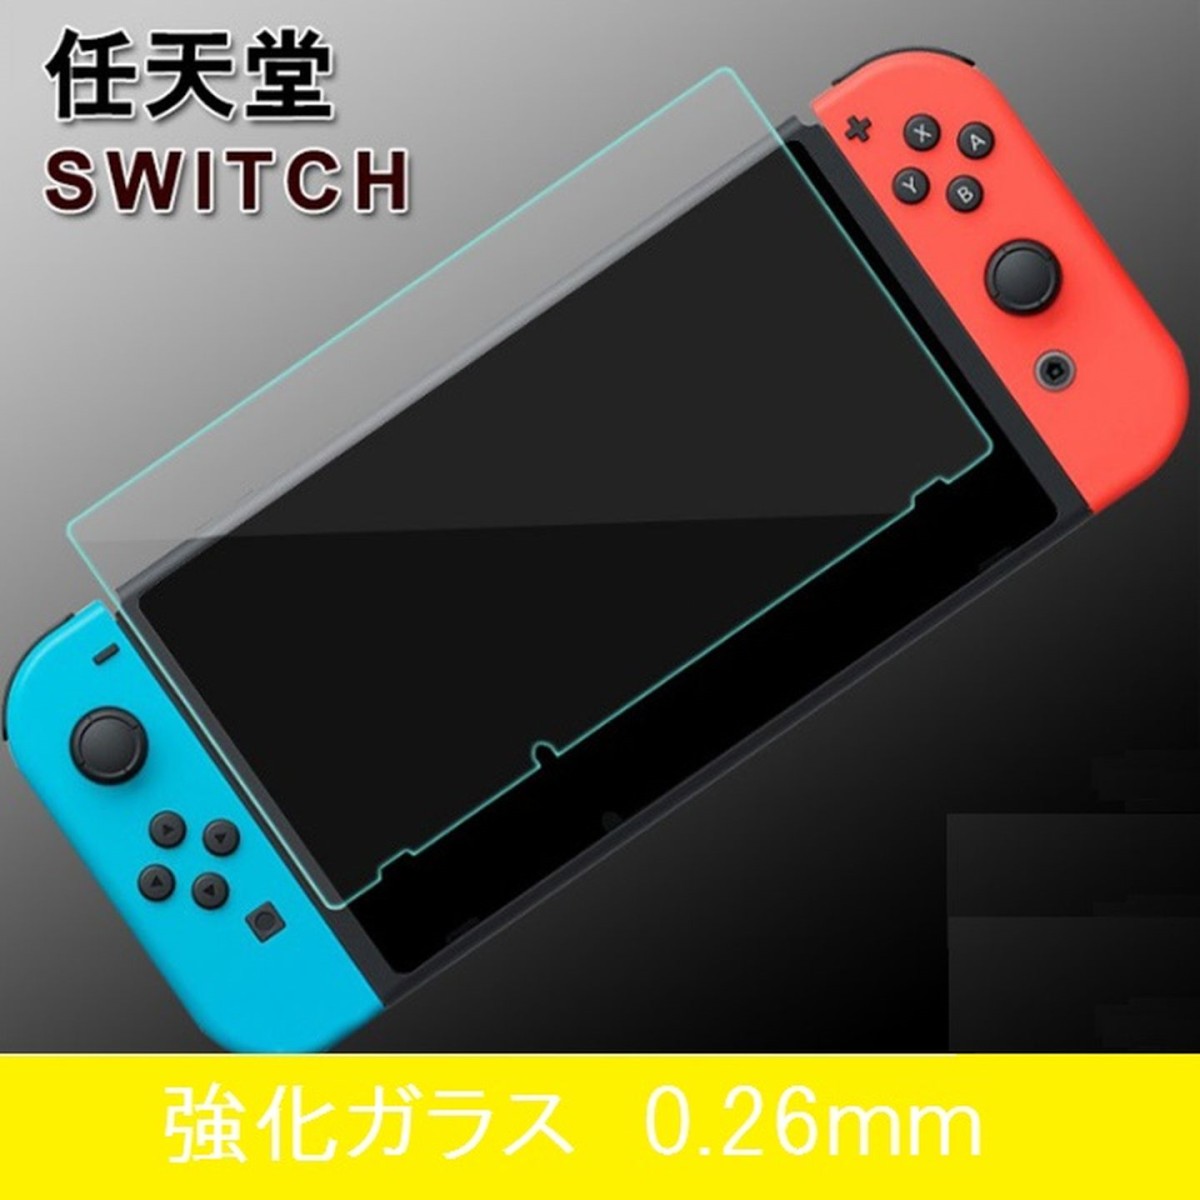 ニンテンドー スイッチ Nintendo Switch 2017年 9H 0.20mm 強化ガラス 液晶保護フィルム 2.5D